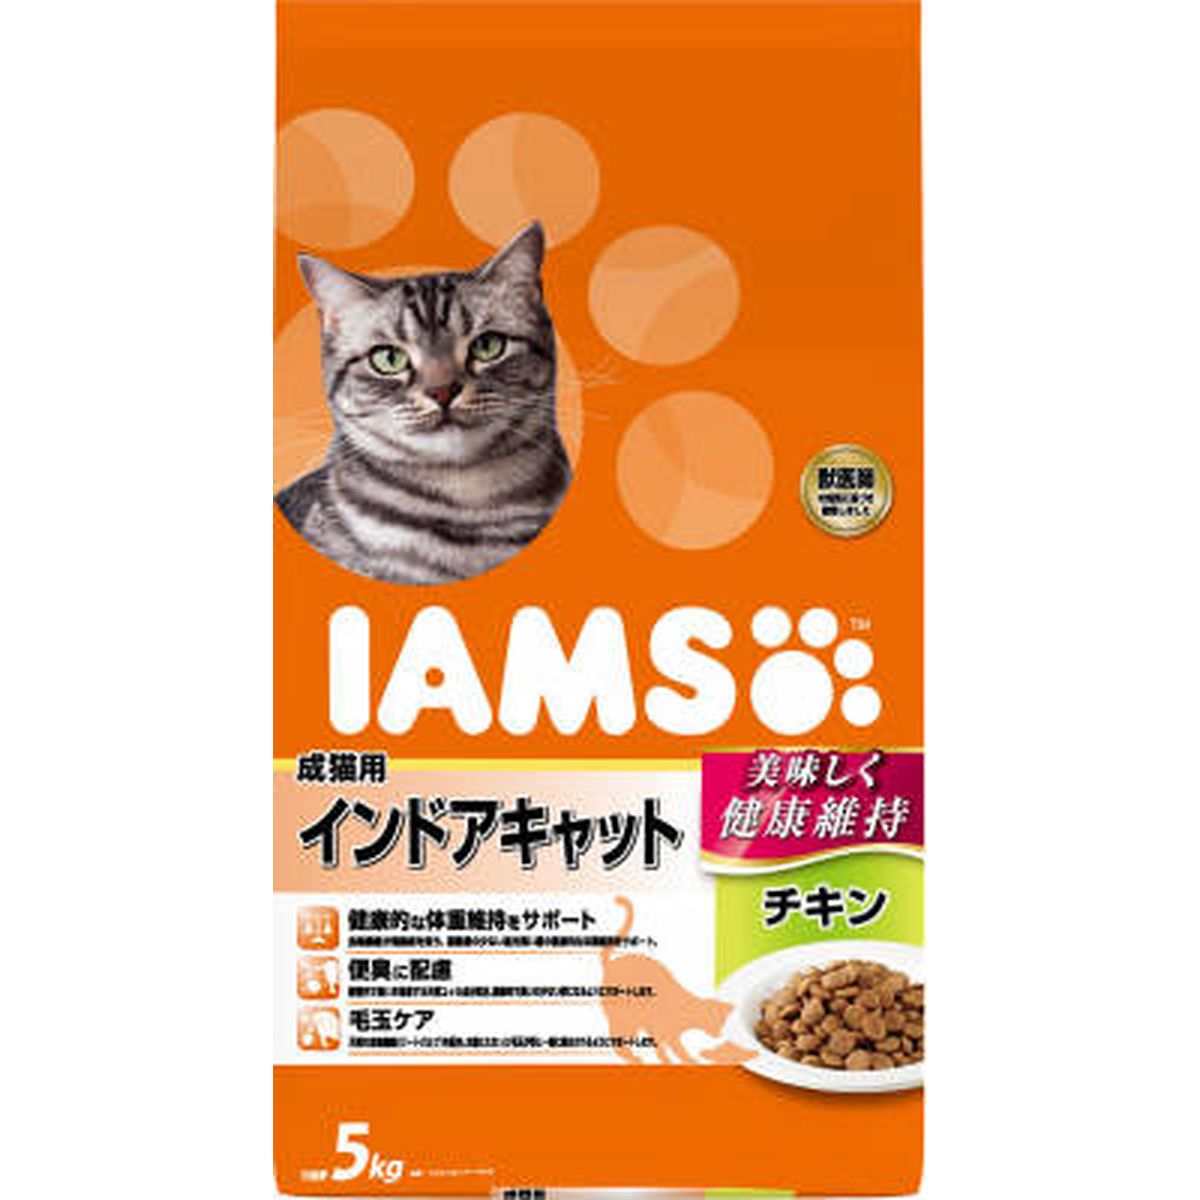 アイムス 成猫用 インドアキャット チキン5kg×2袋